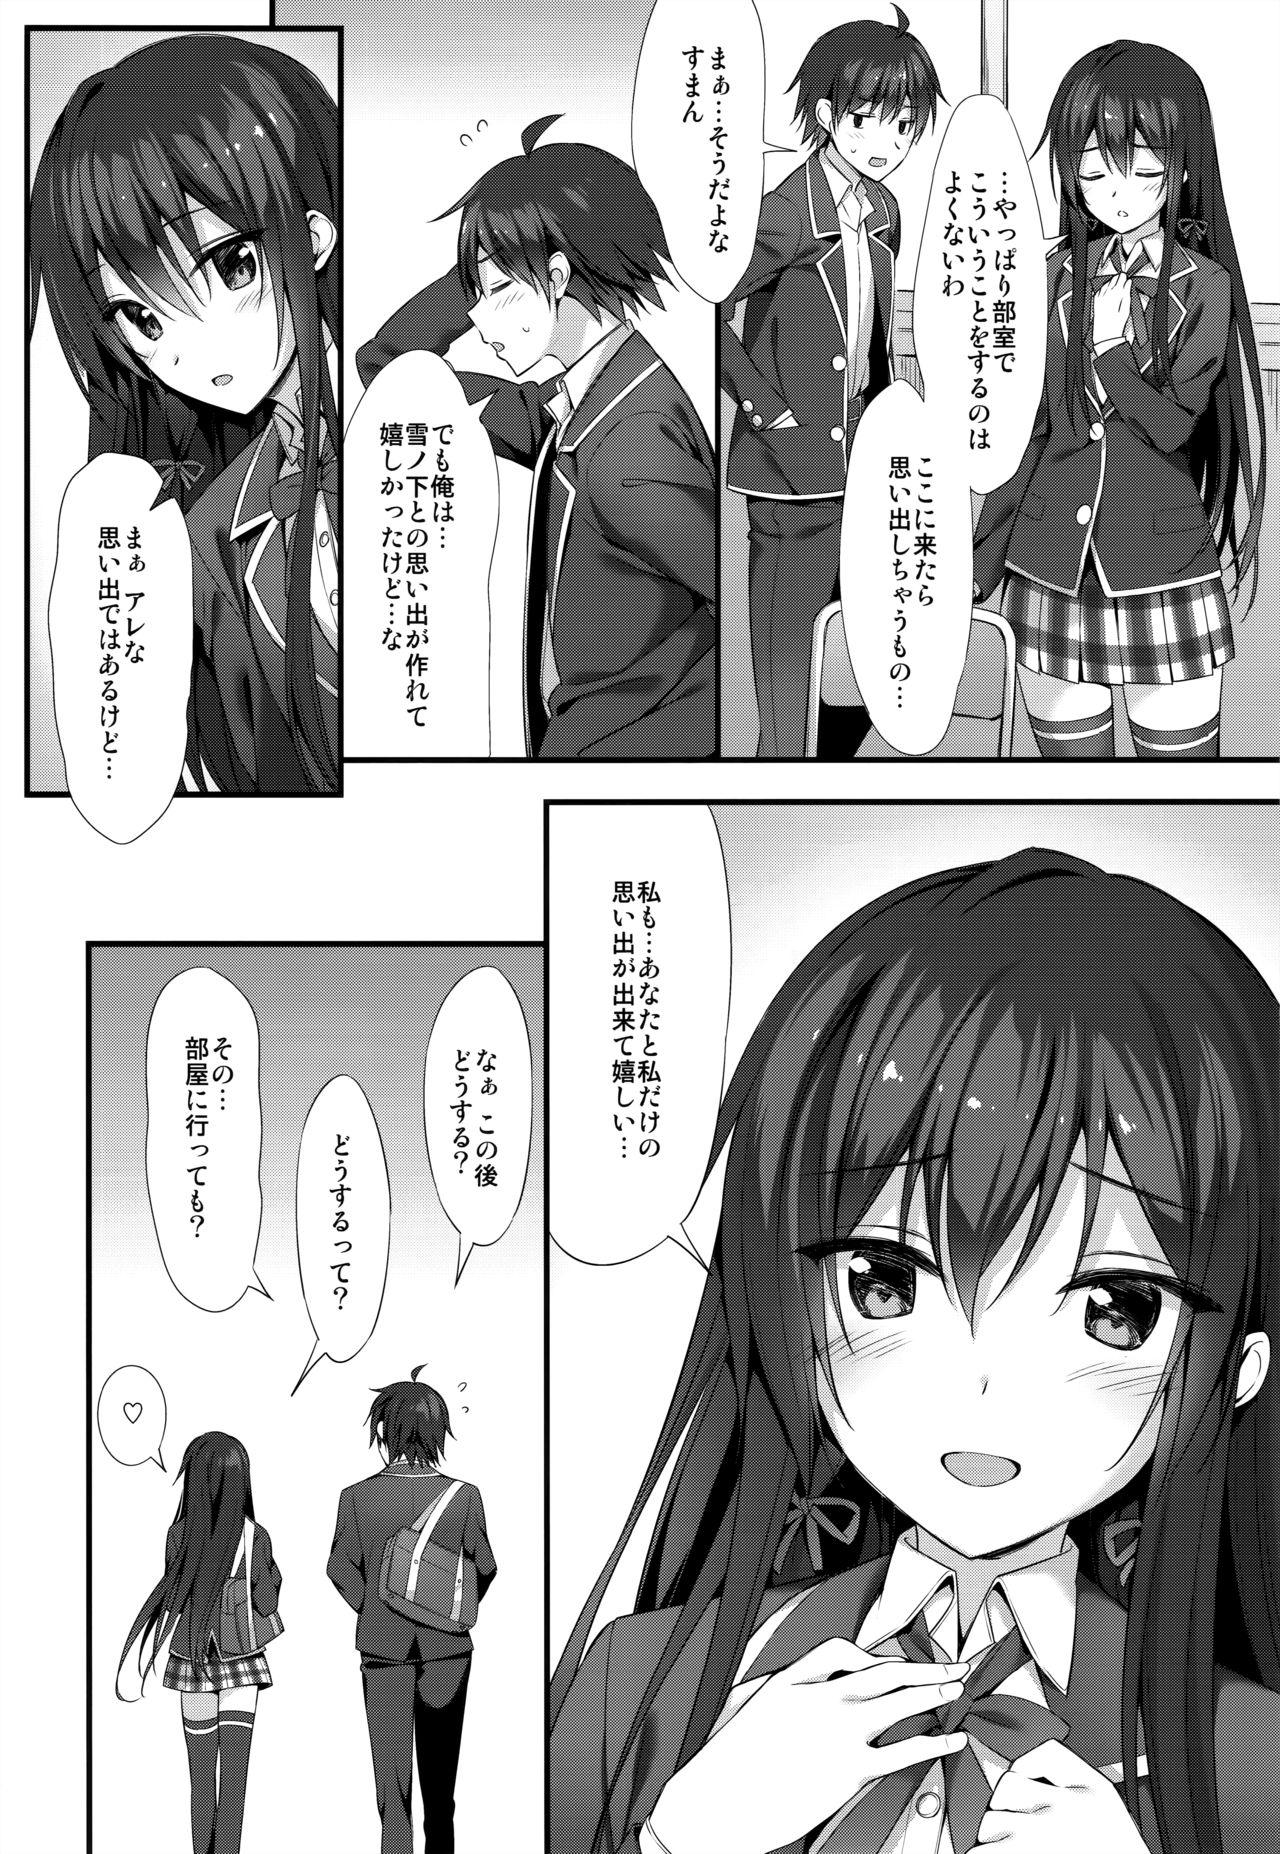 Hot Girls Getting Fucked Yukinon Gentei 3 - Yahari ore no seishun love come wa machigatteiru Thuylinh - Page 10